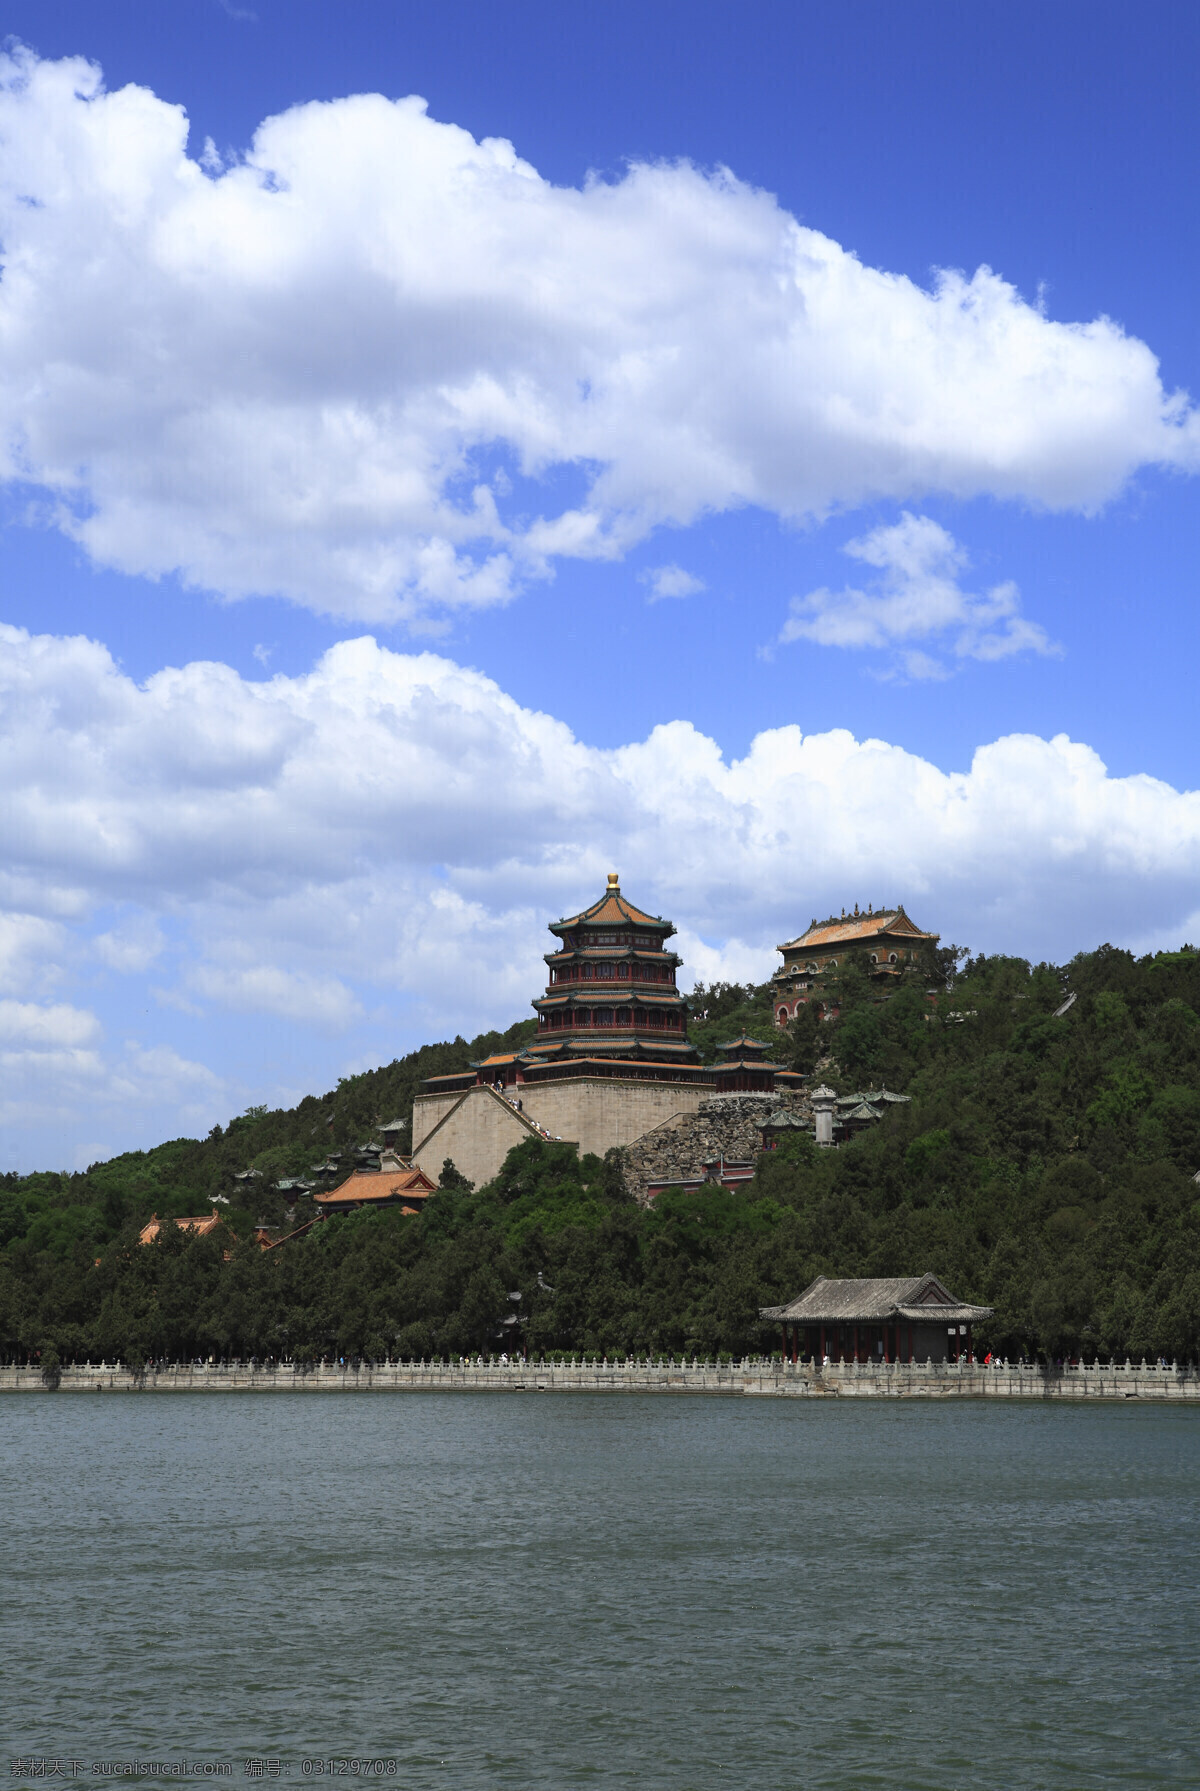 北京 颐和园 佛香阁 湖水 古代建筑 山水 国内旅游 旅游摄影 皇家园林 风景名胜 自然景观